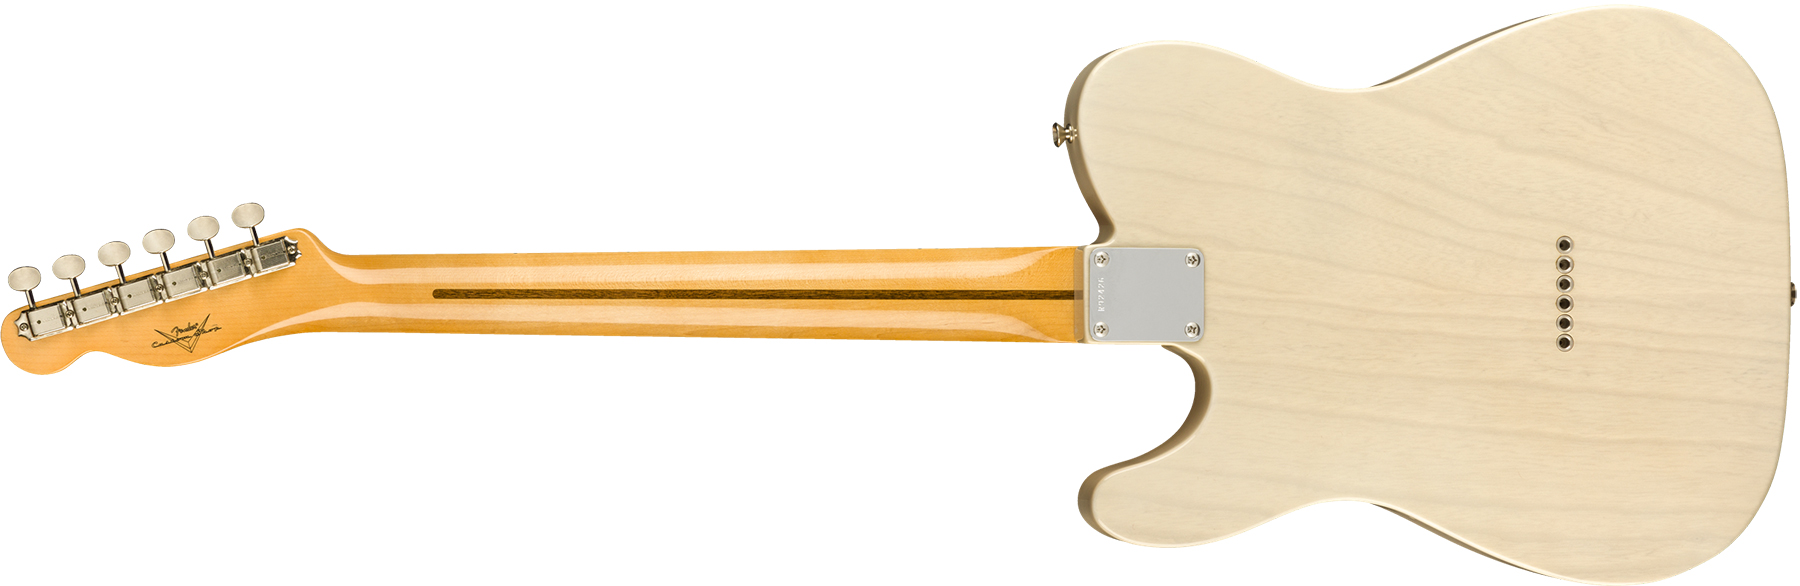 Fender Custom Shop Tele Vintage Custom 1958 Top Load Ltd Mn - Nos Aged White Blonde - Televorm elektrische gitaar - Variation 1